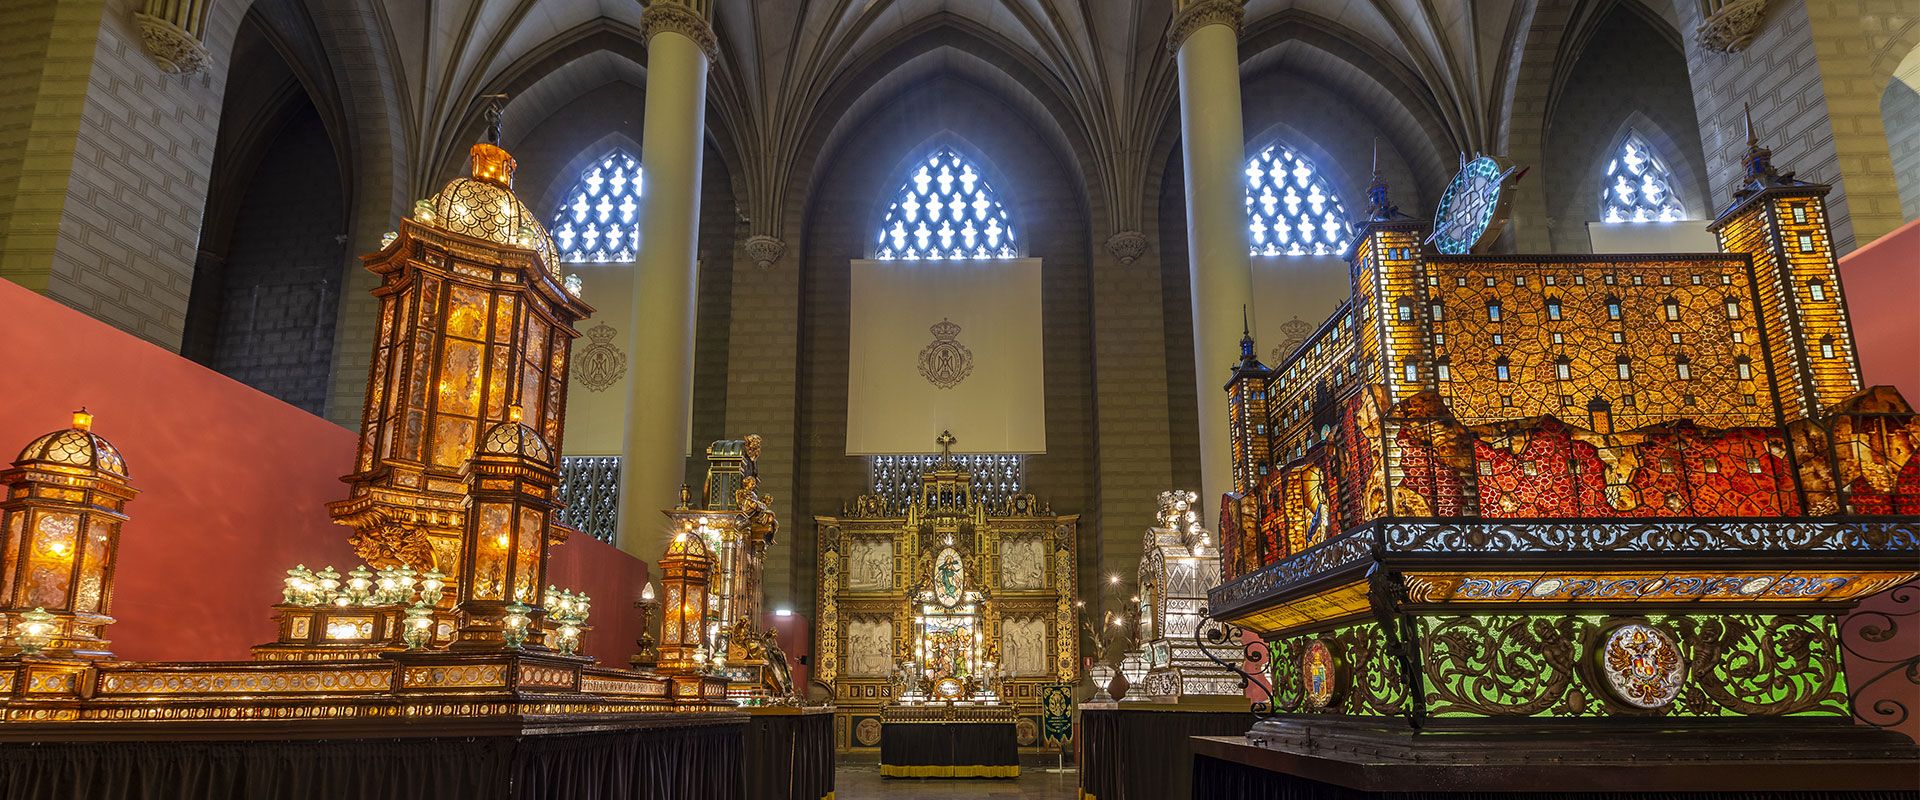 Labor Por encima de la cabeza y el hombro dirigir Rosario de Cristal - Catedrales de Zaragoza